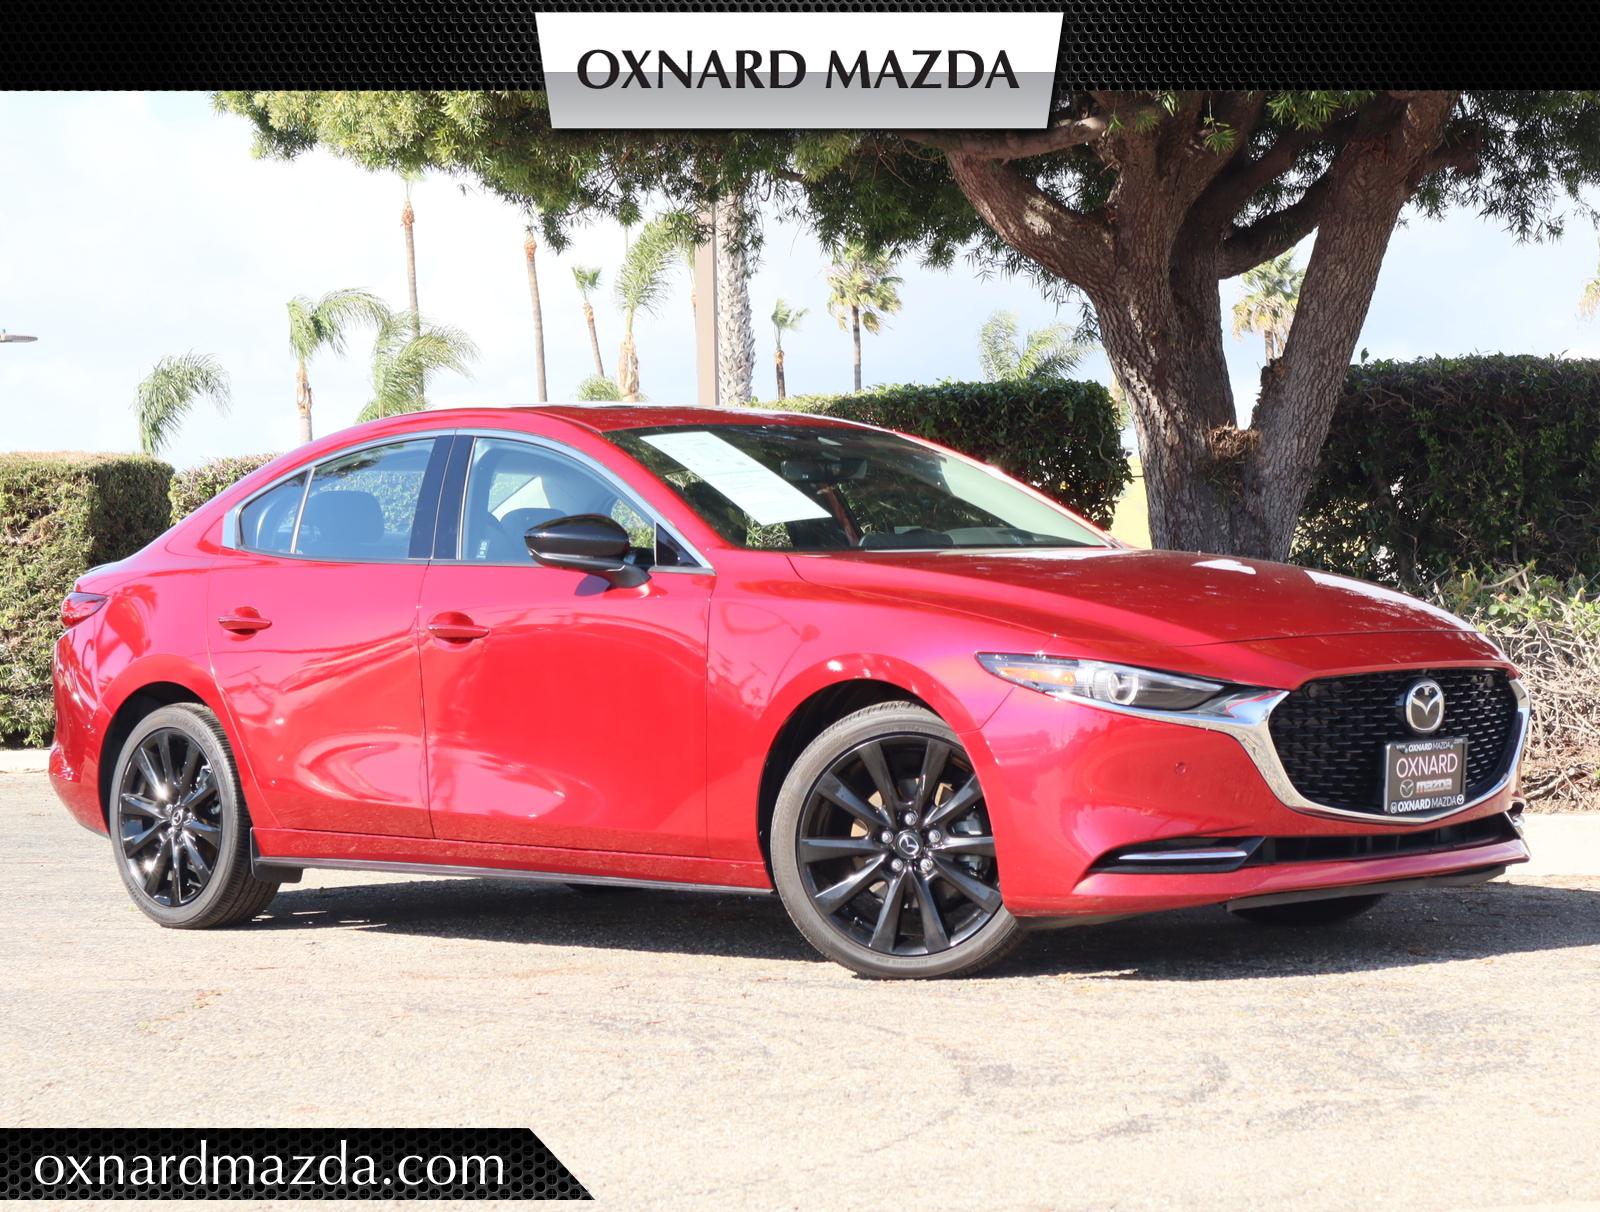 2022 Mazda Mazda3 Oxnard CA